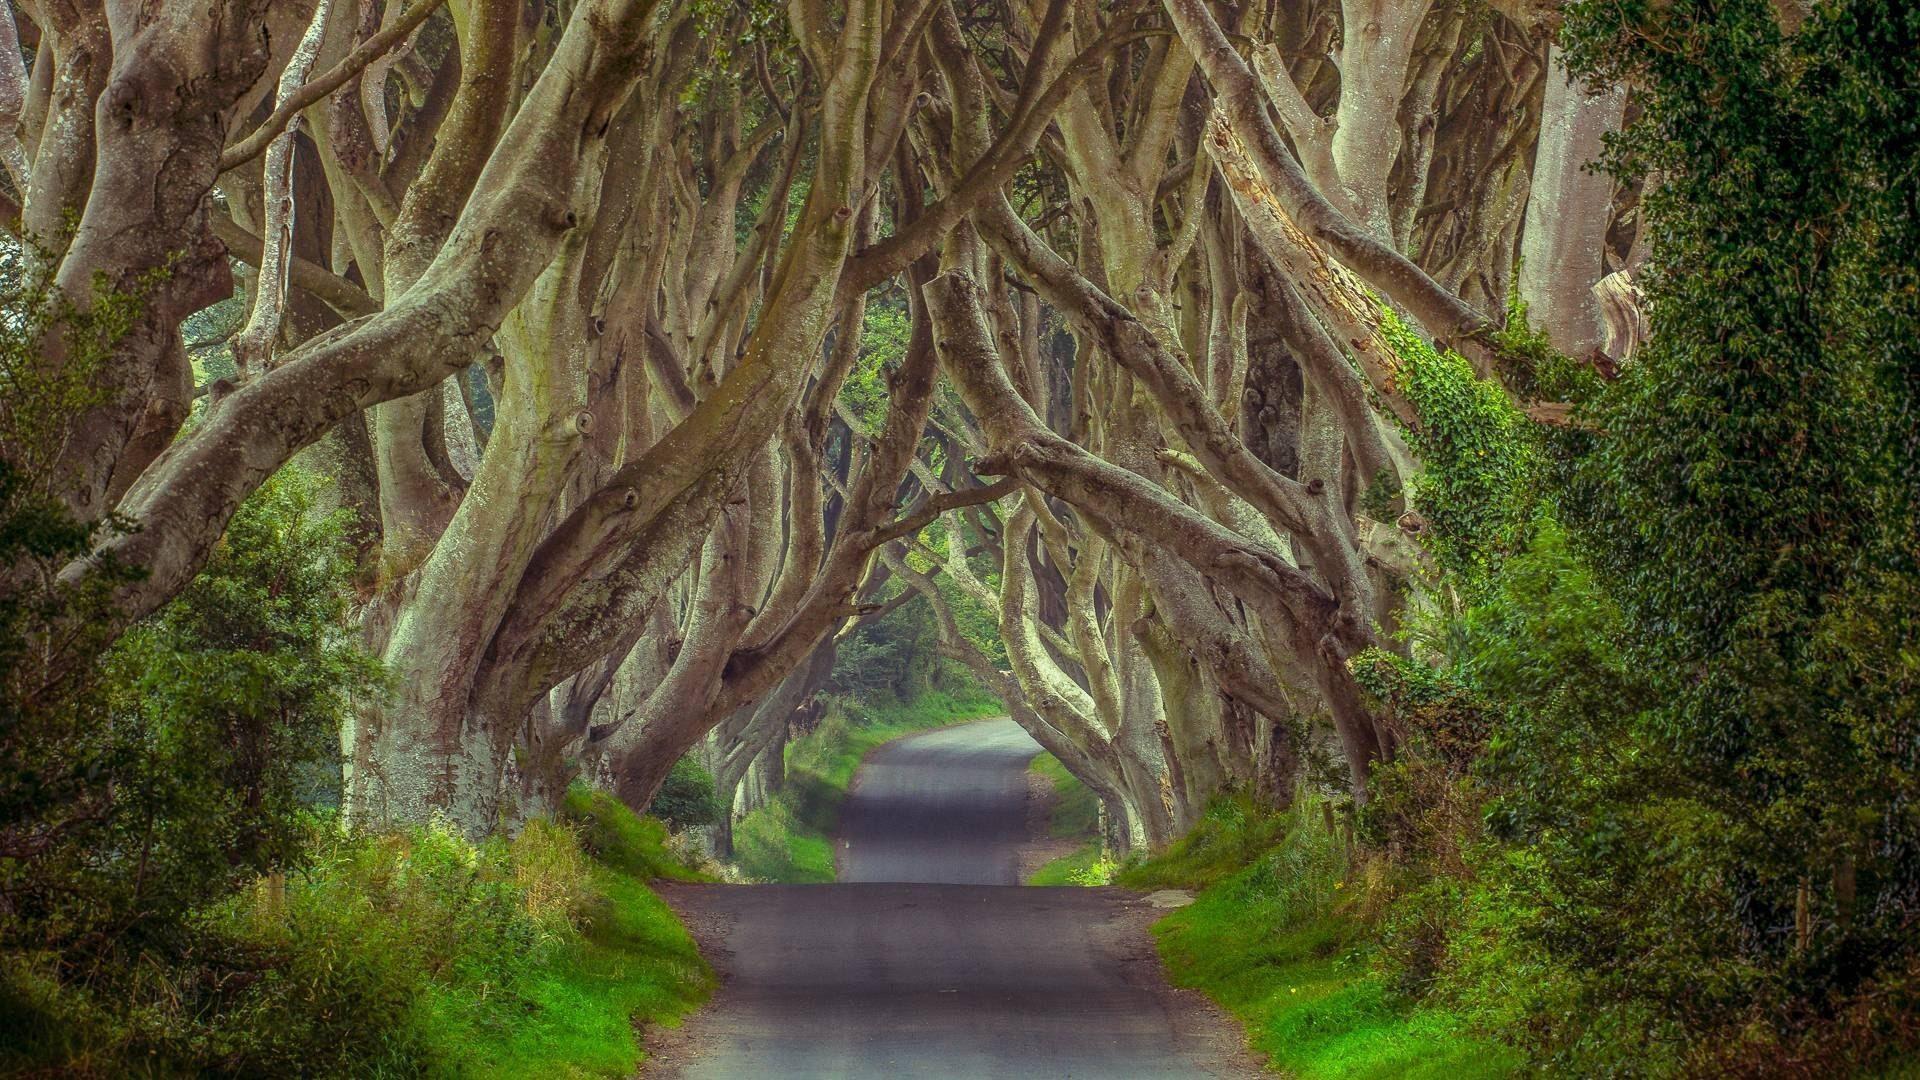 Cây rừng Ireland là một trong những địa điểm hoang sơ, bí ẩn và đầy kỳ quan. Với những hình ảnh cây rừng Ireland mà chúng tôi cung cấp, chắc chắn sẽ khiến bạn ngạc nhiên và được tận hưởng cảm giác thanh tịnh trong lòng. Hãy xem ngay để tìm thấy niềm yêu thích của bạn.